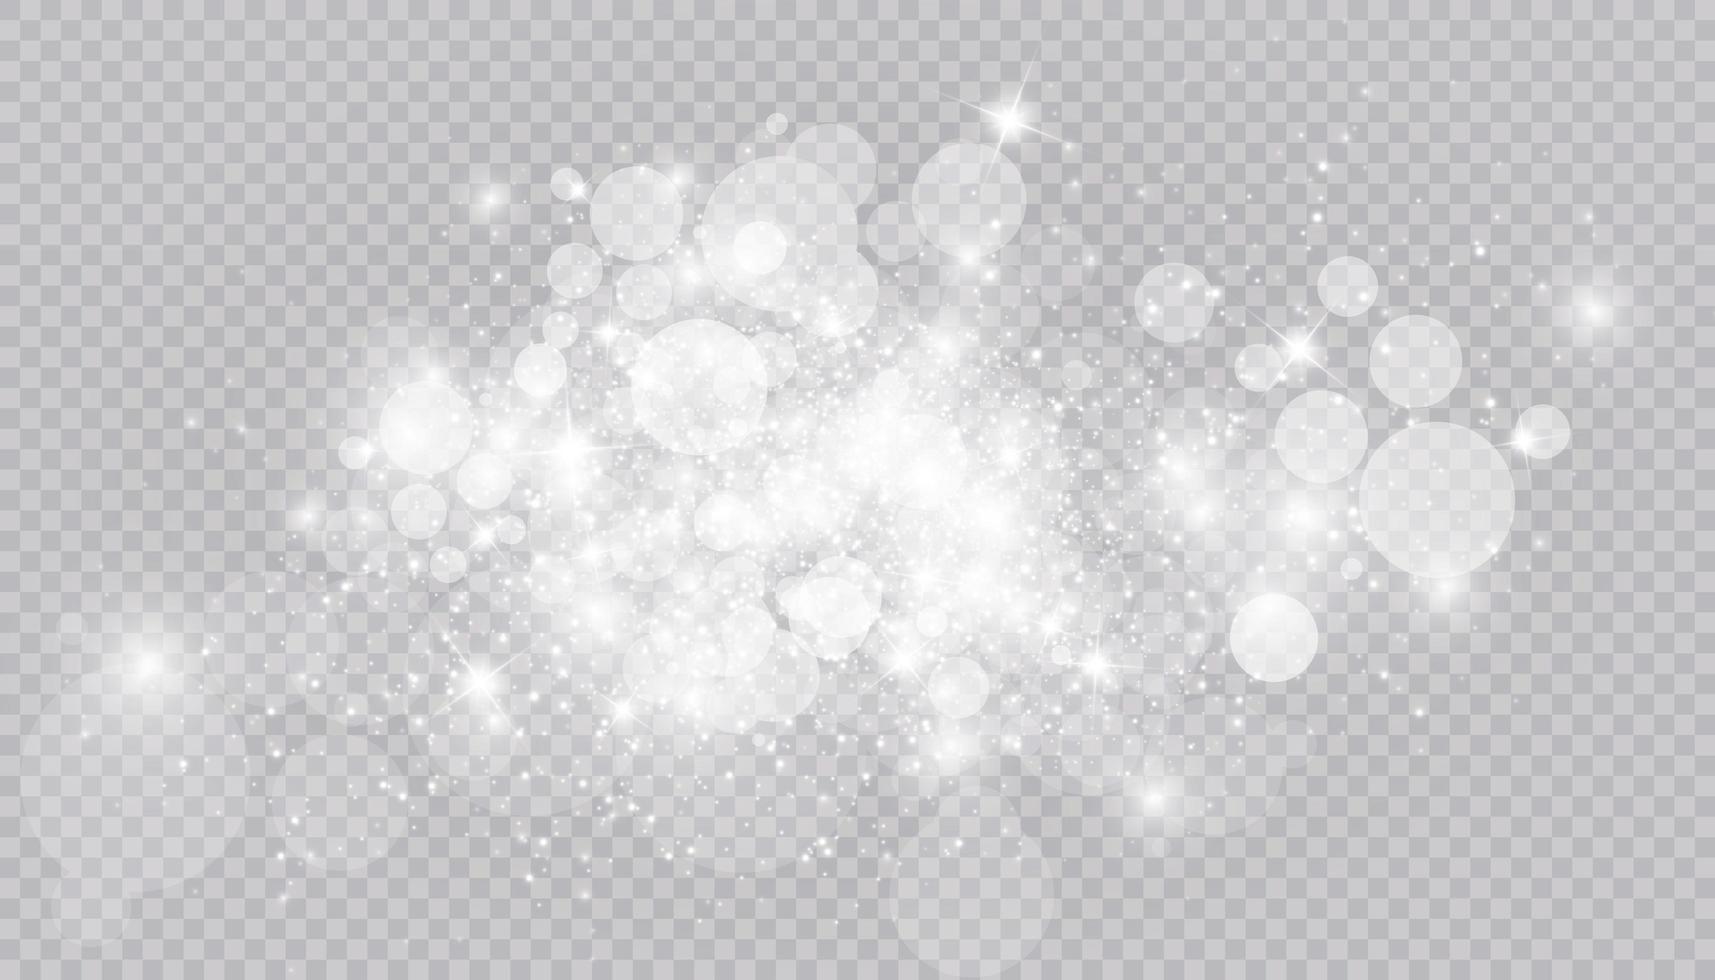 efeito de luz brilhante com muitas partículas de glitter isoladas vetor